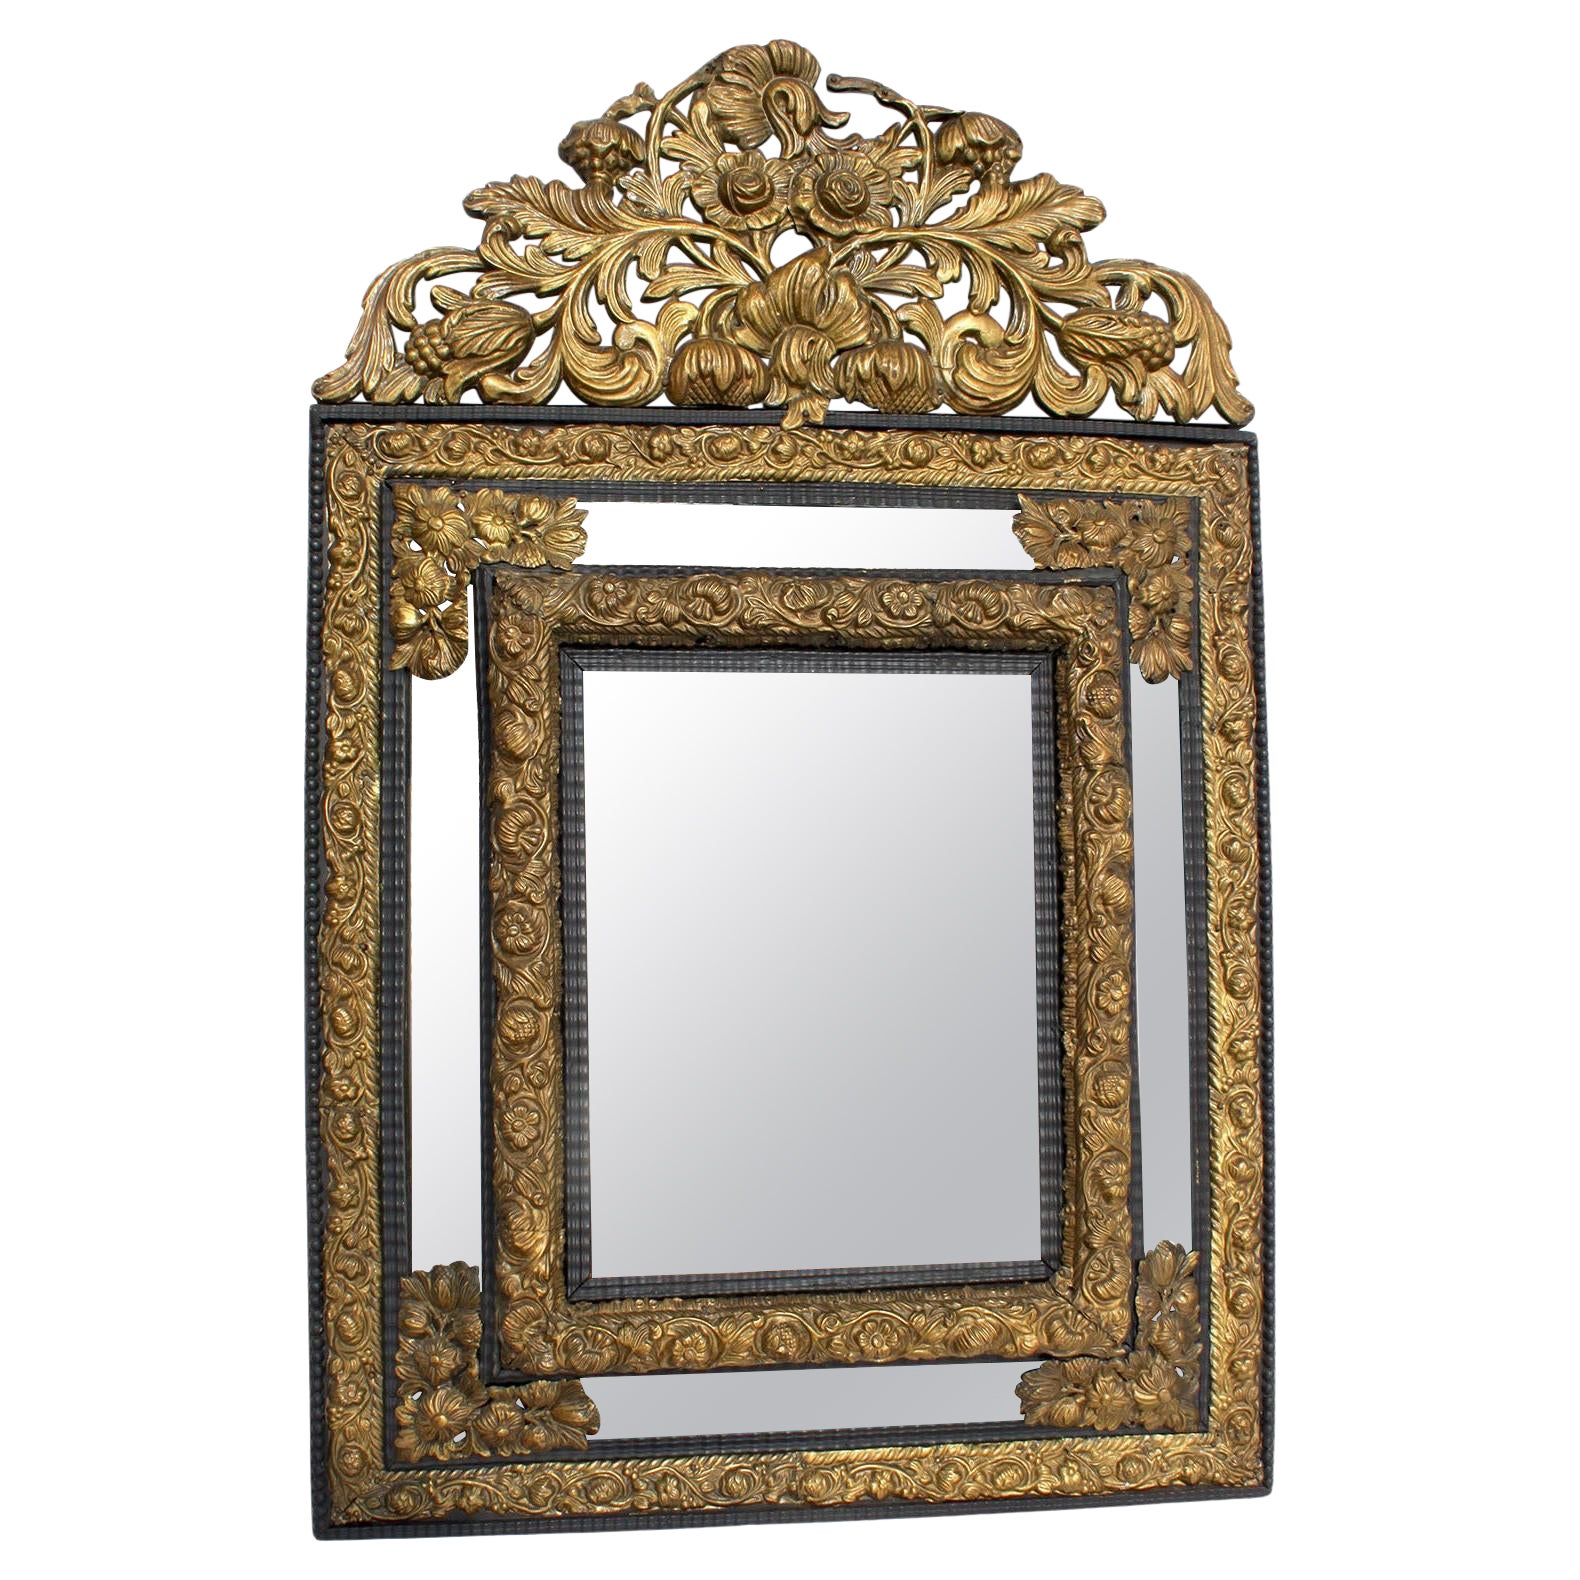 Cadre de miroir repoussé en laiton doré Hammer, de style baroque français du 19e siècle